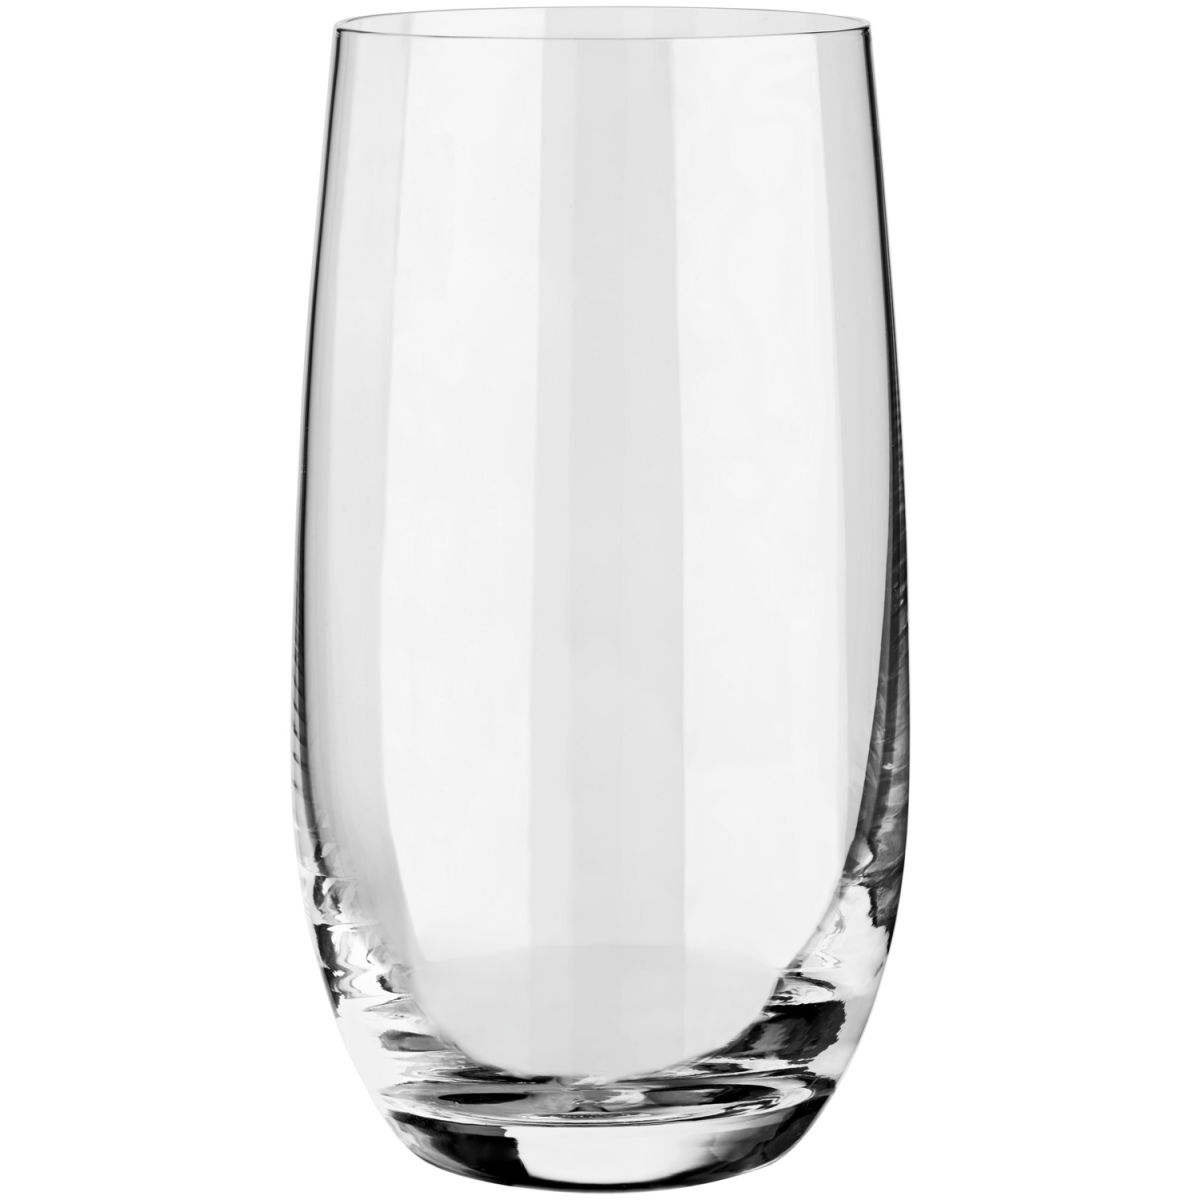 Vega Longdrinkglas Theresa; 350ml, 6.2x13.2 cm (ØxH); transparant; 6 stuk / verpakking